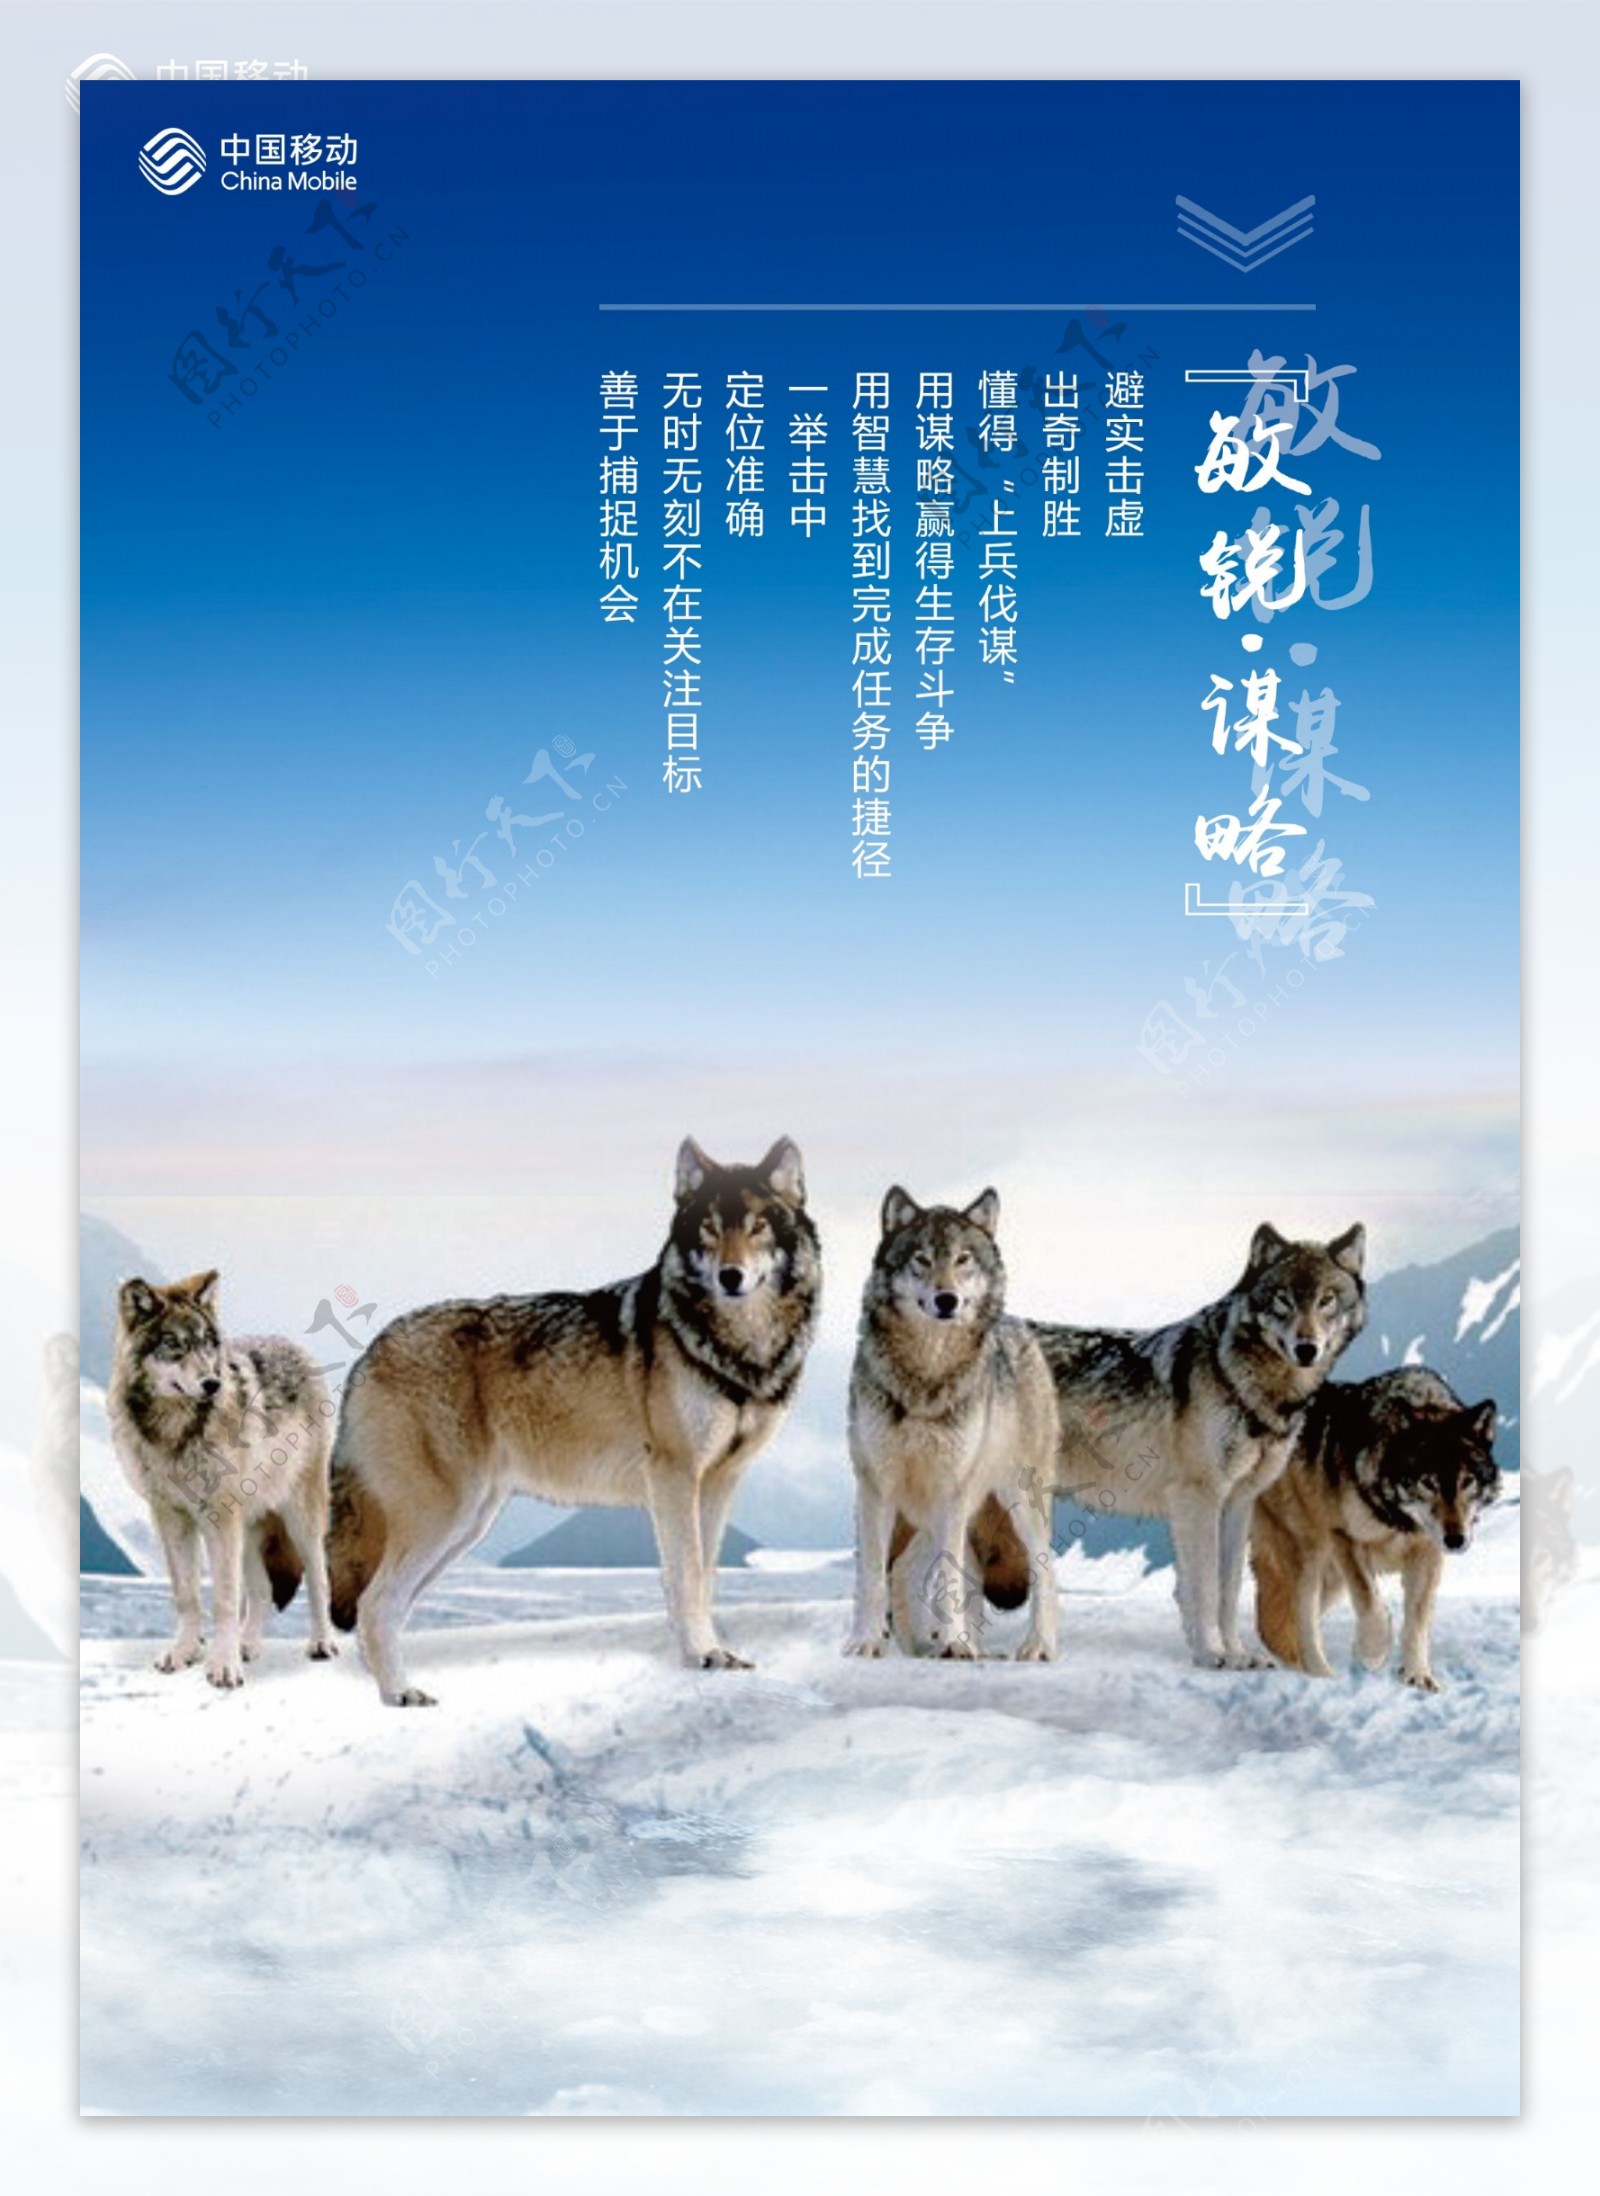 蓝色企业狼文化宣传海报展板